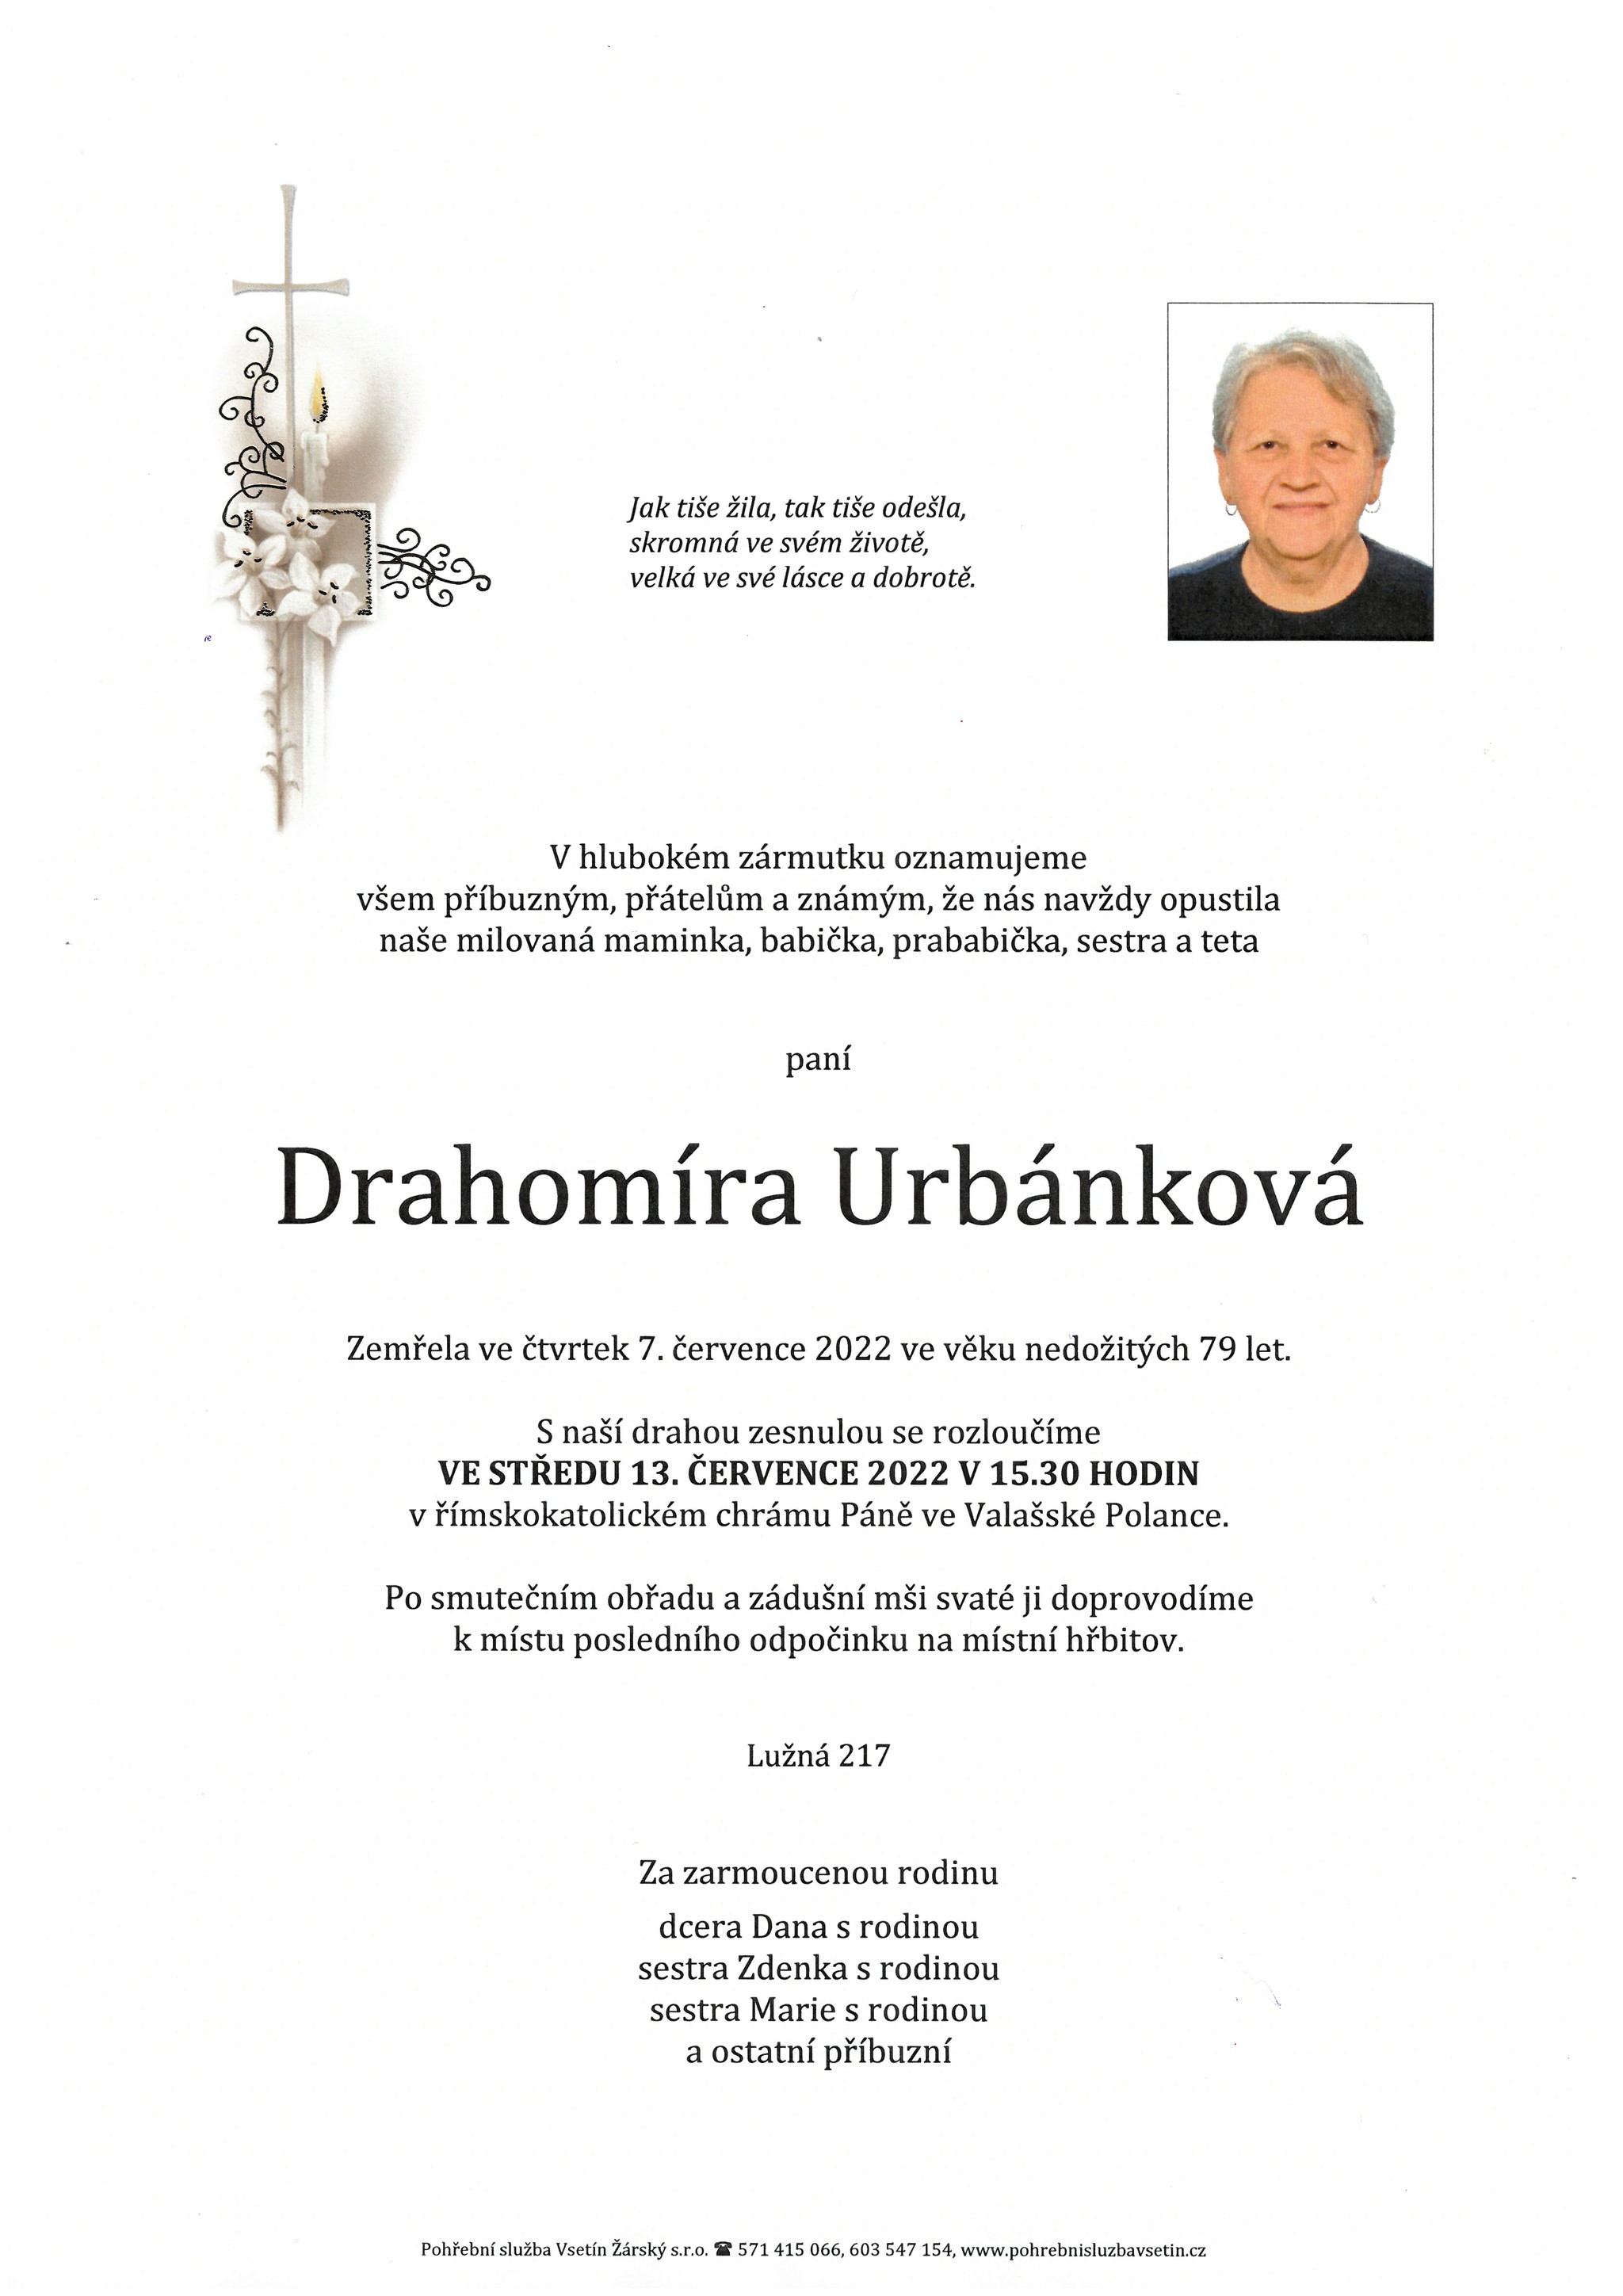 Drahomíra Urbánková